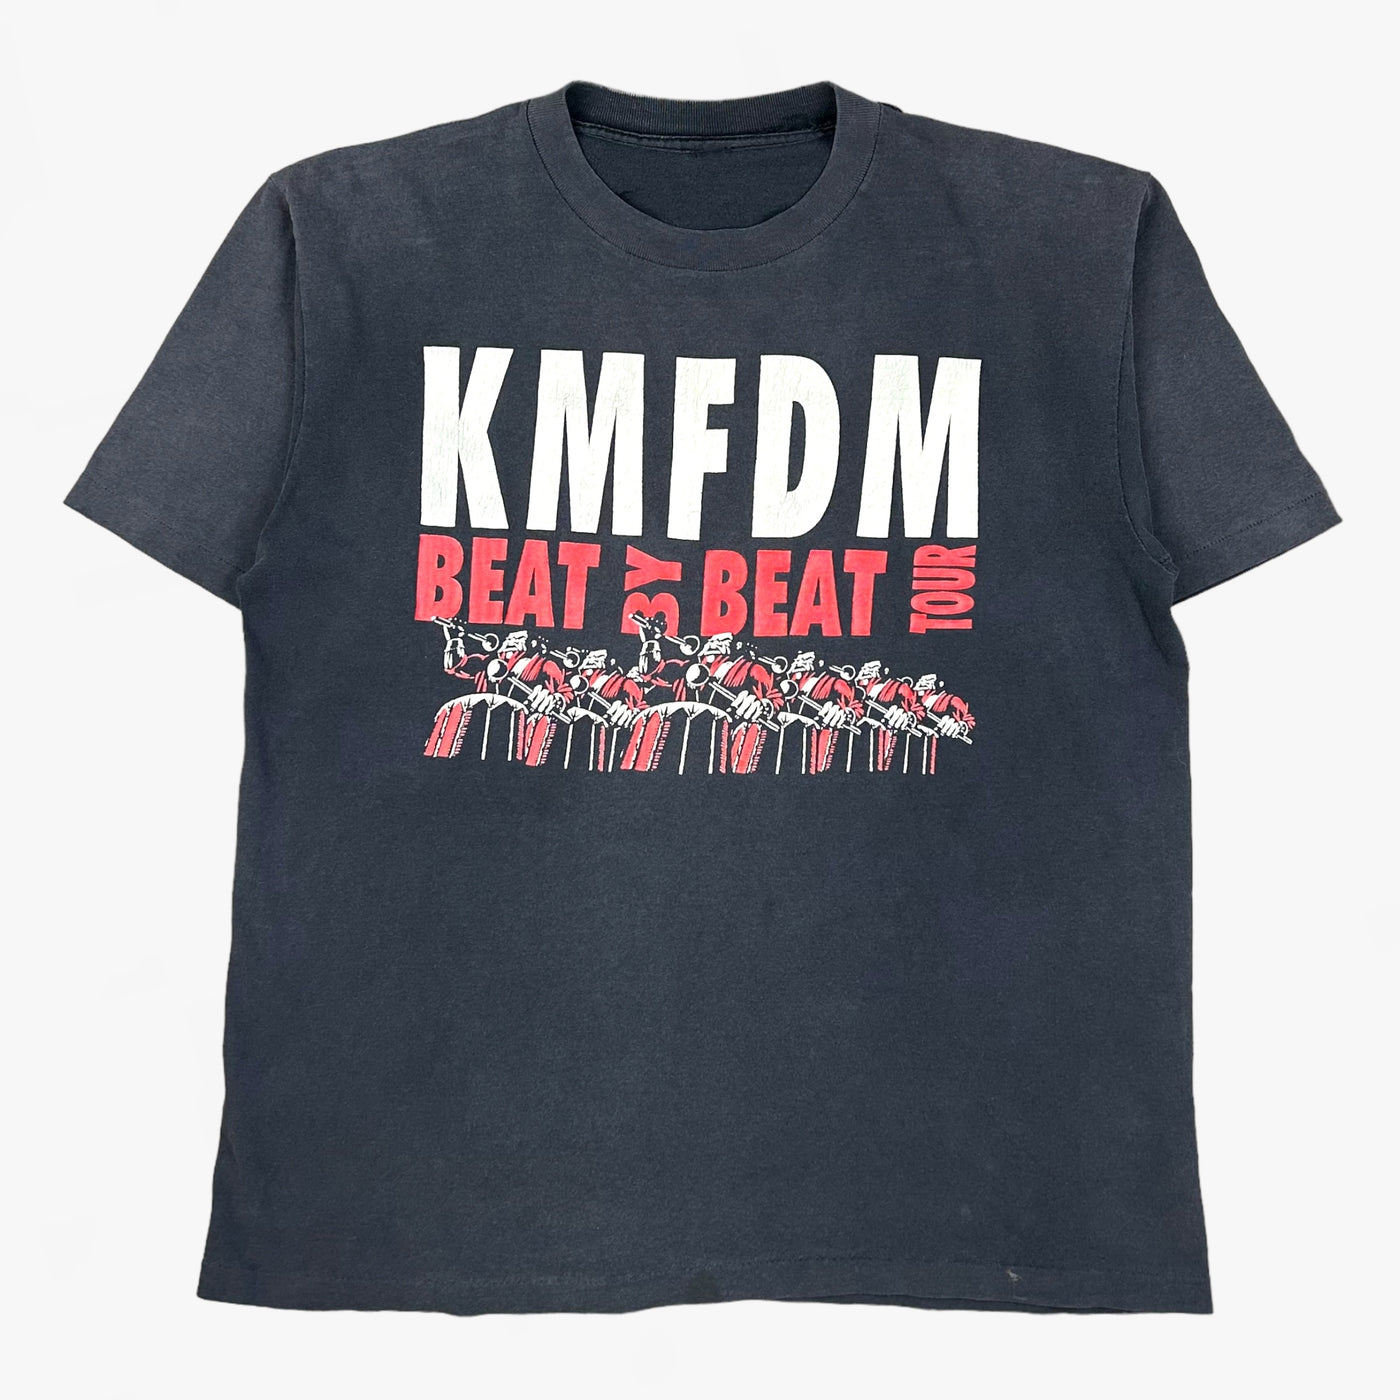 1995 KMFDM T-SHIRT